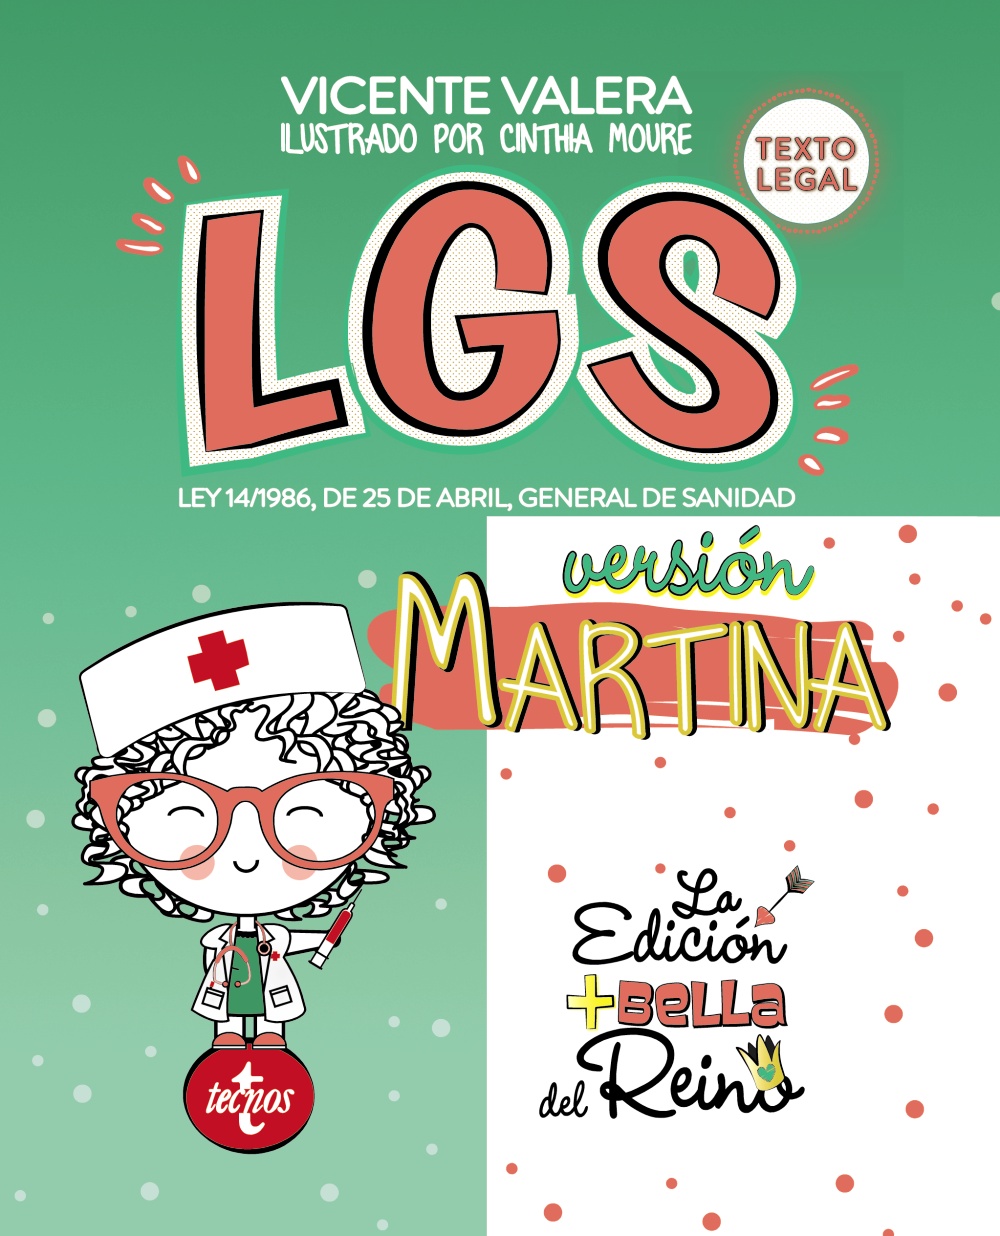 LGS versión Martina. 9788430978908